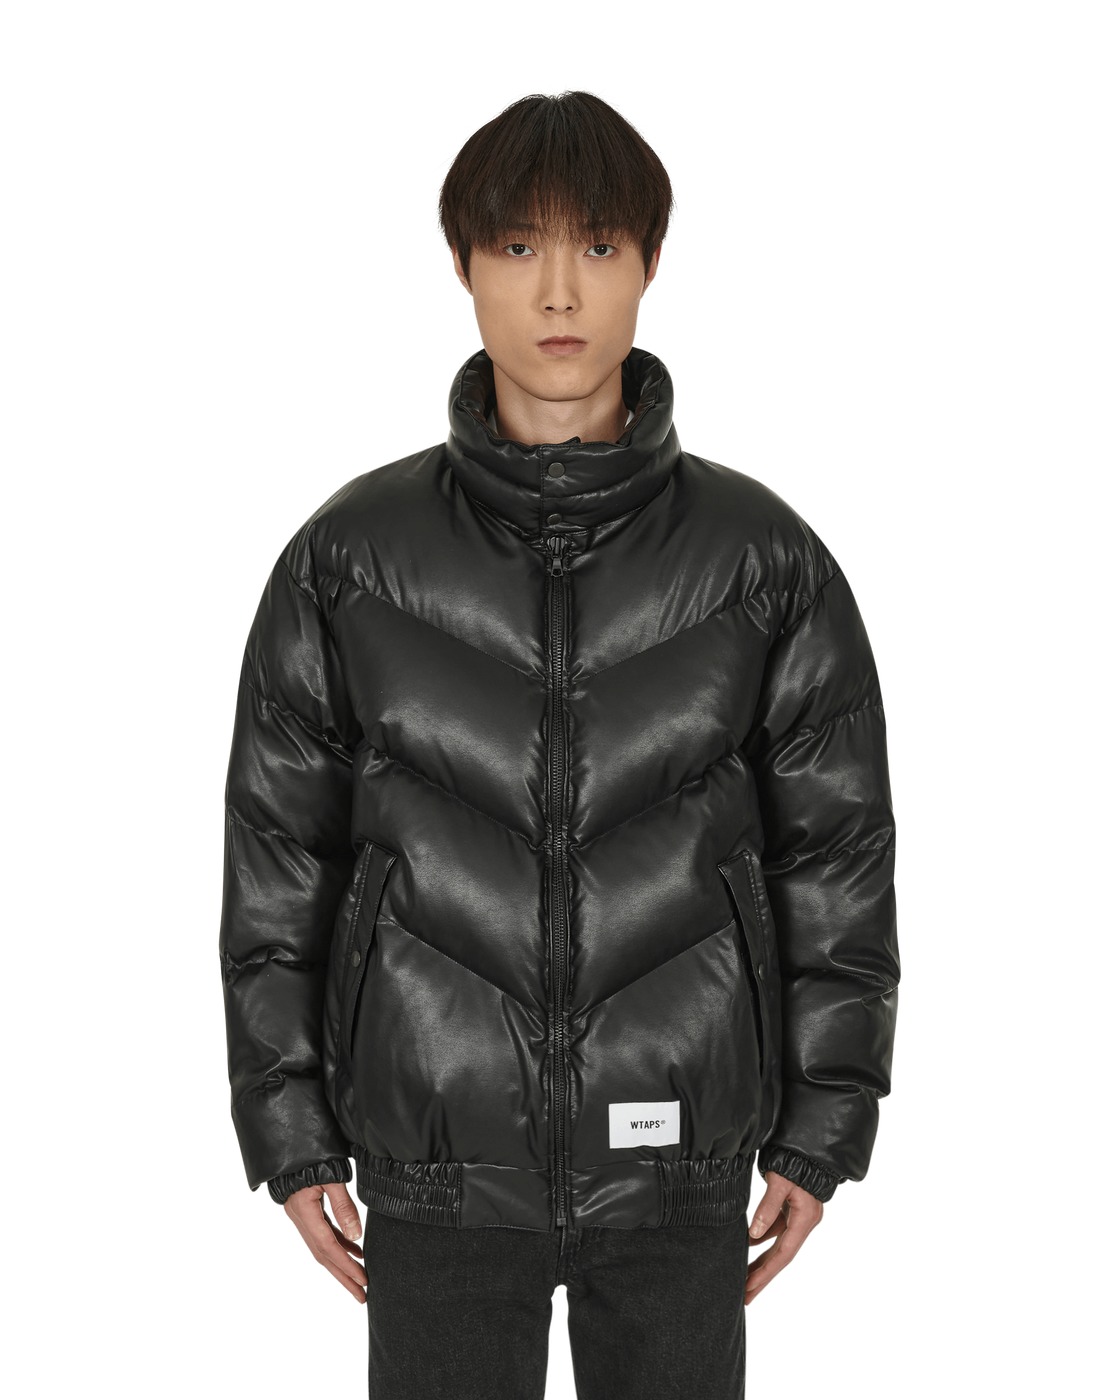 特価販売品 WTAPS UNDERCOVER JT jacket ブラック Mサイズ | www